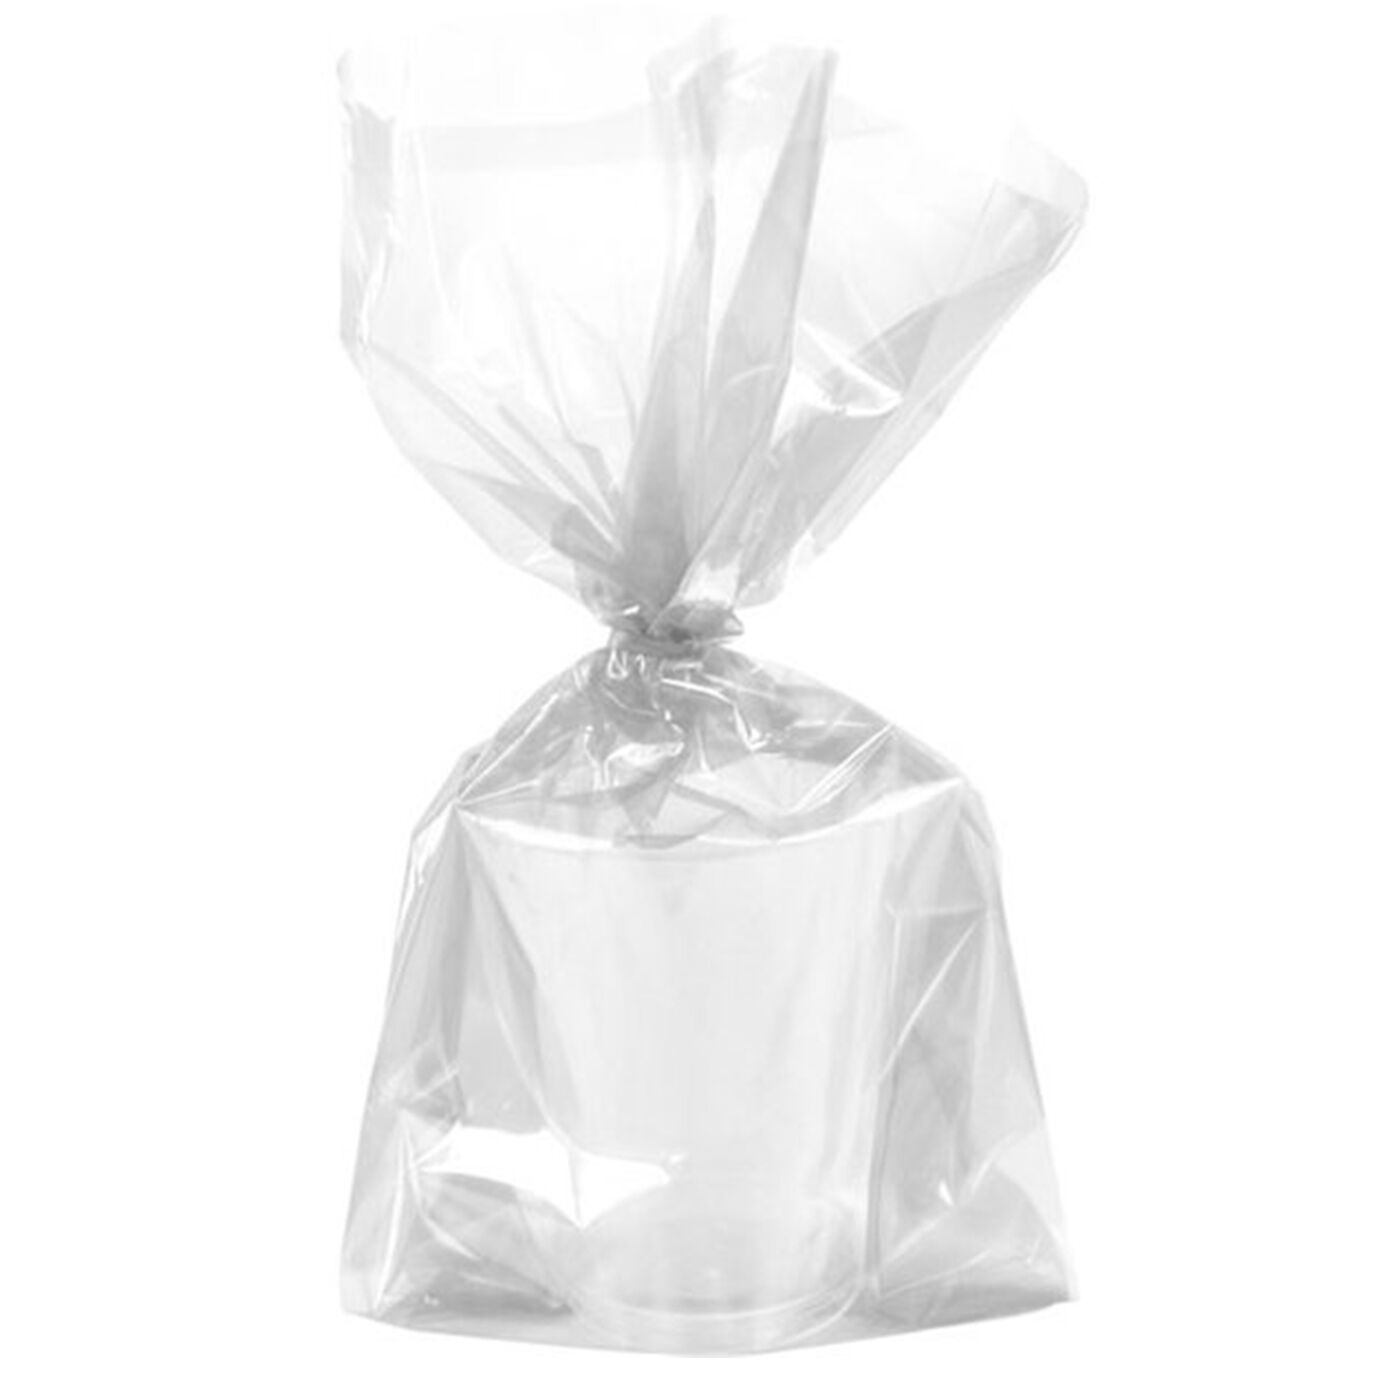 Unique Plastic Cellophane Bags, Clear - 30 count